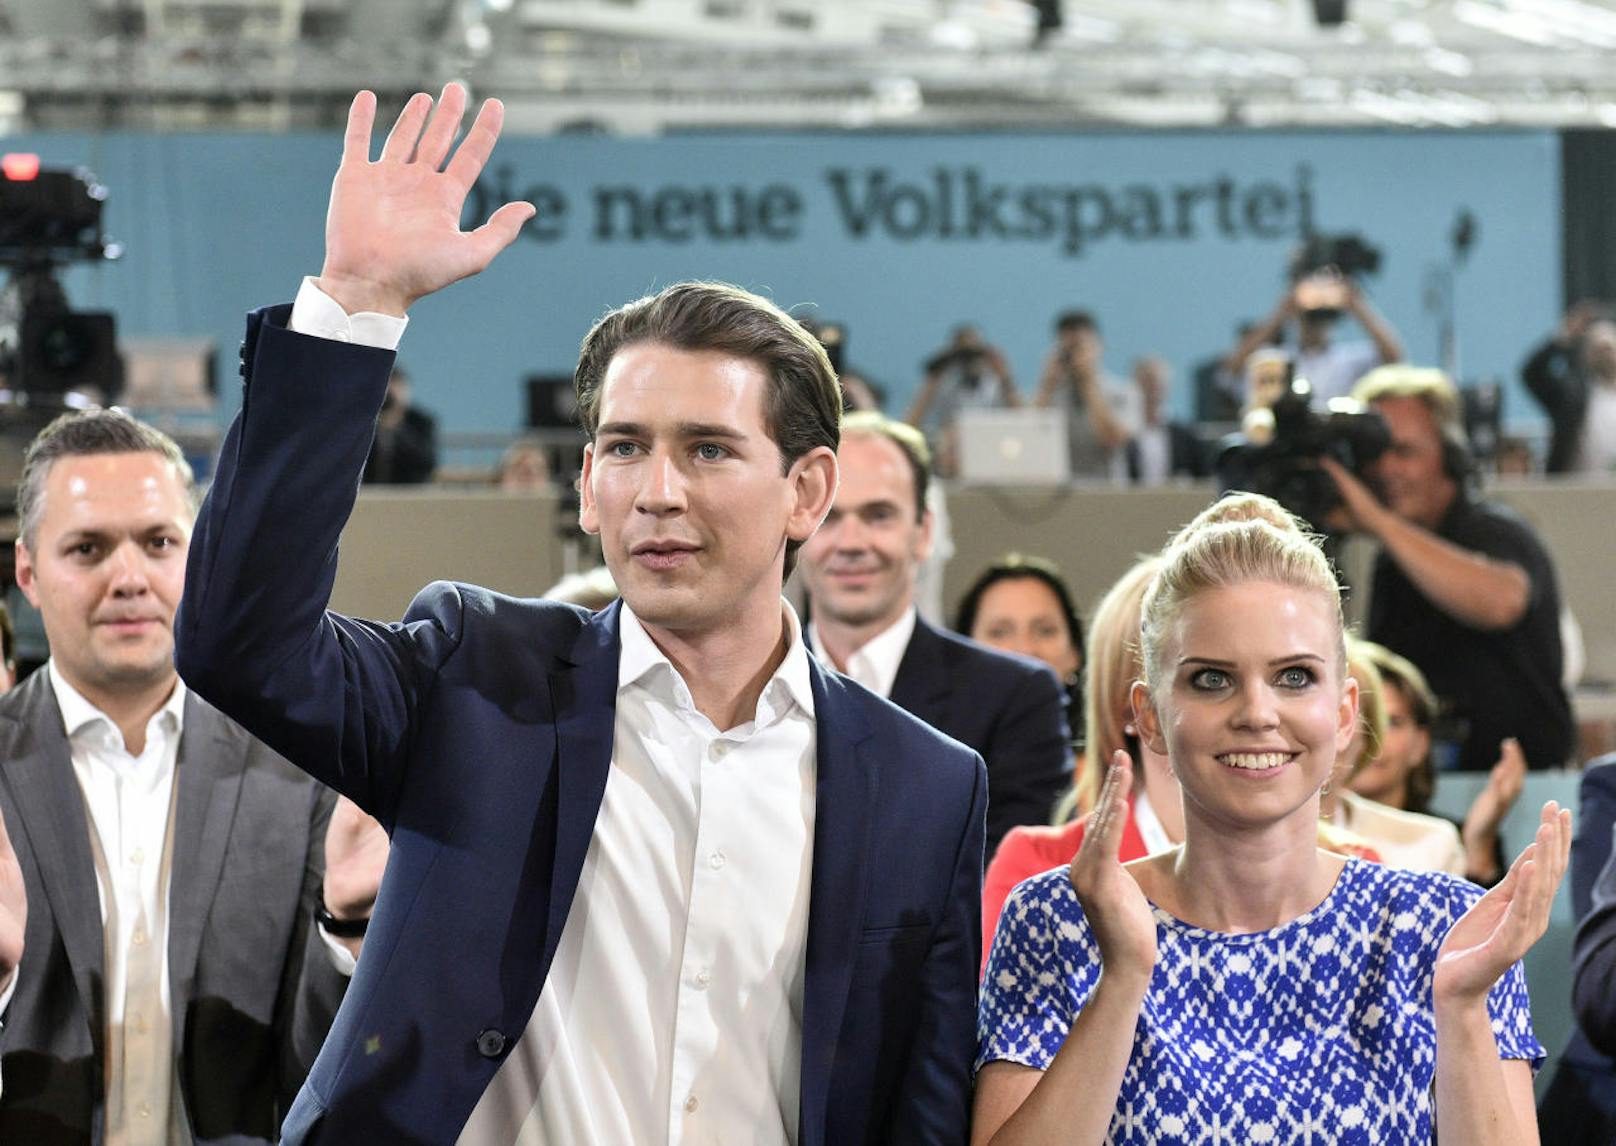 Sebastian Kurz mit seiner Freundin Susanne Thier und seinen Eltern.